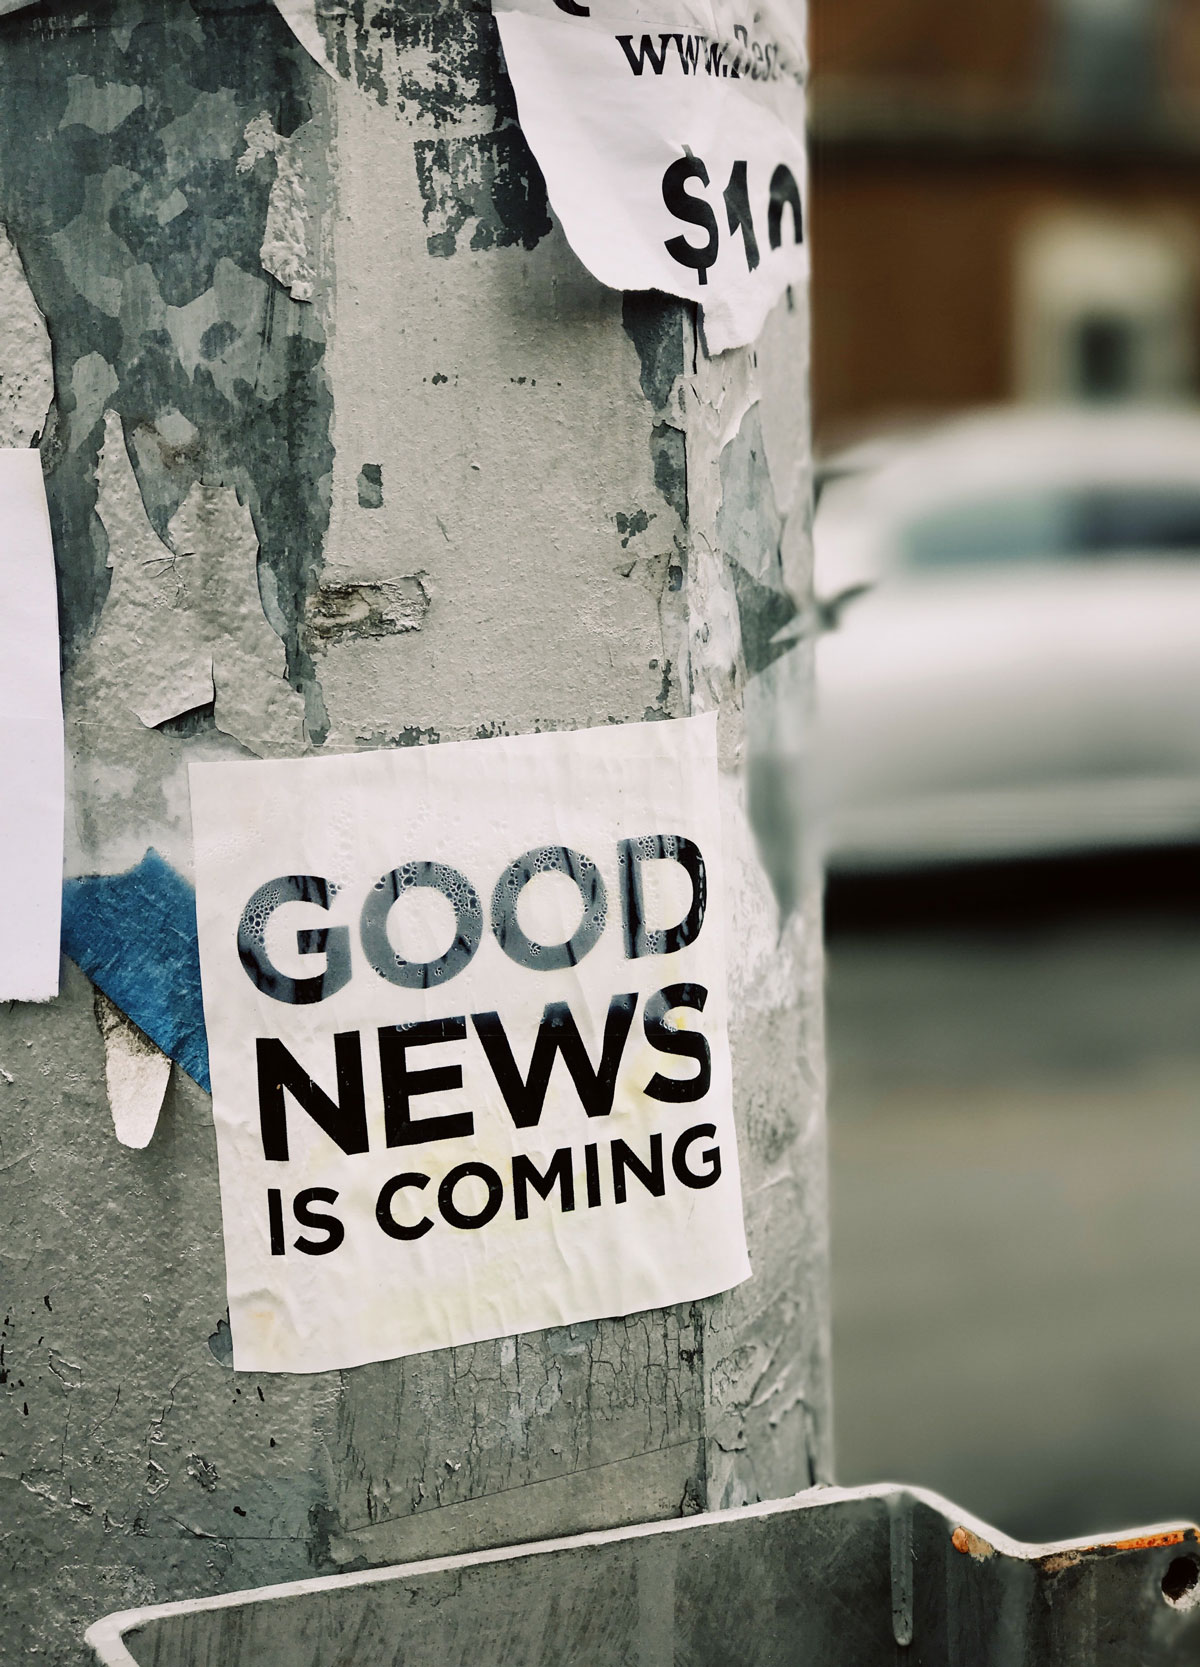 Aufkleber "Good News is coming" auf Säule draußen